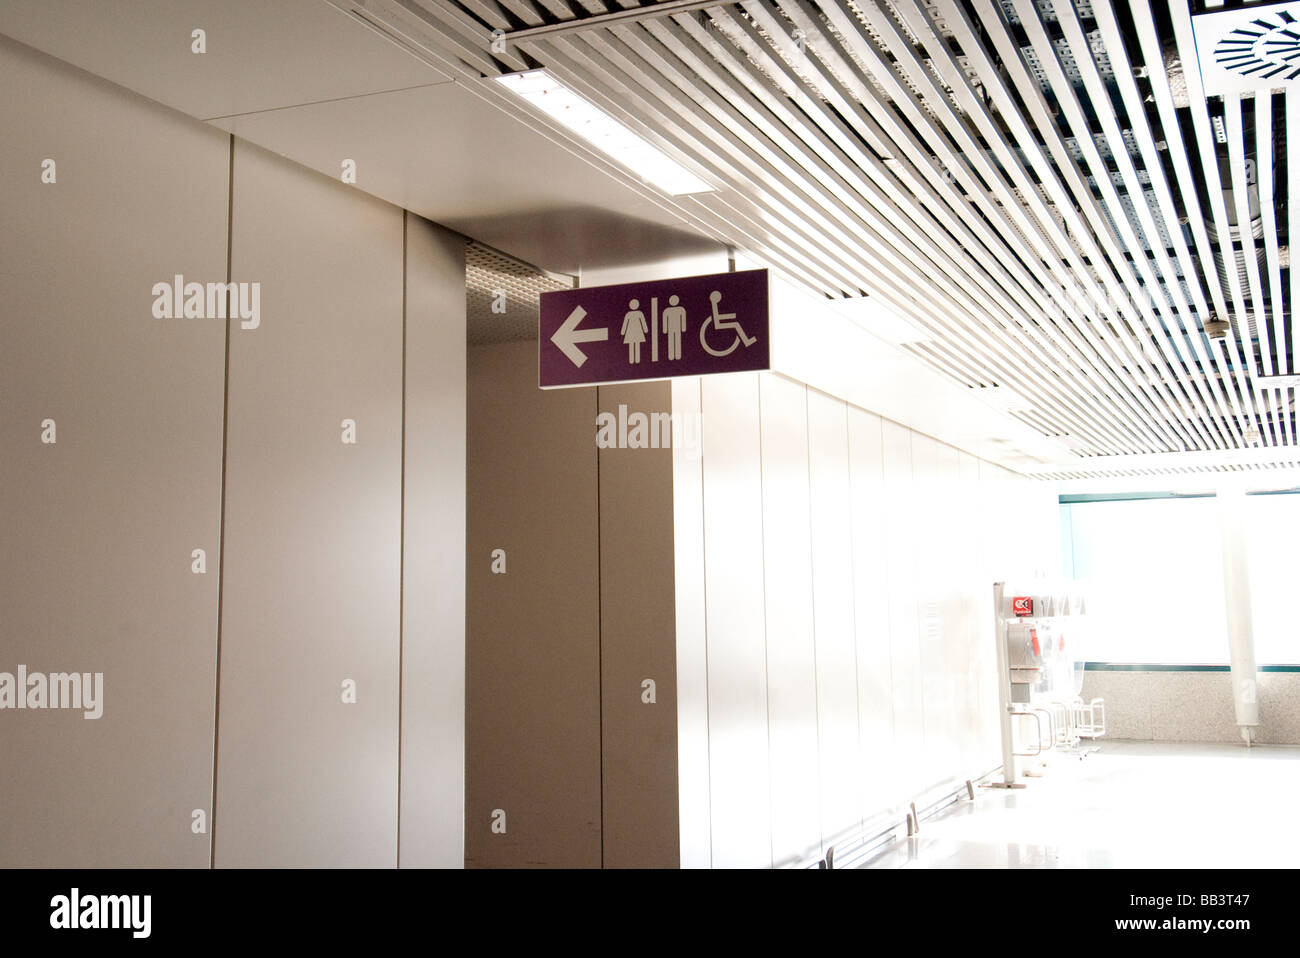 Toilette zu unterzeichnen in Rom Flughafen Stockfoto